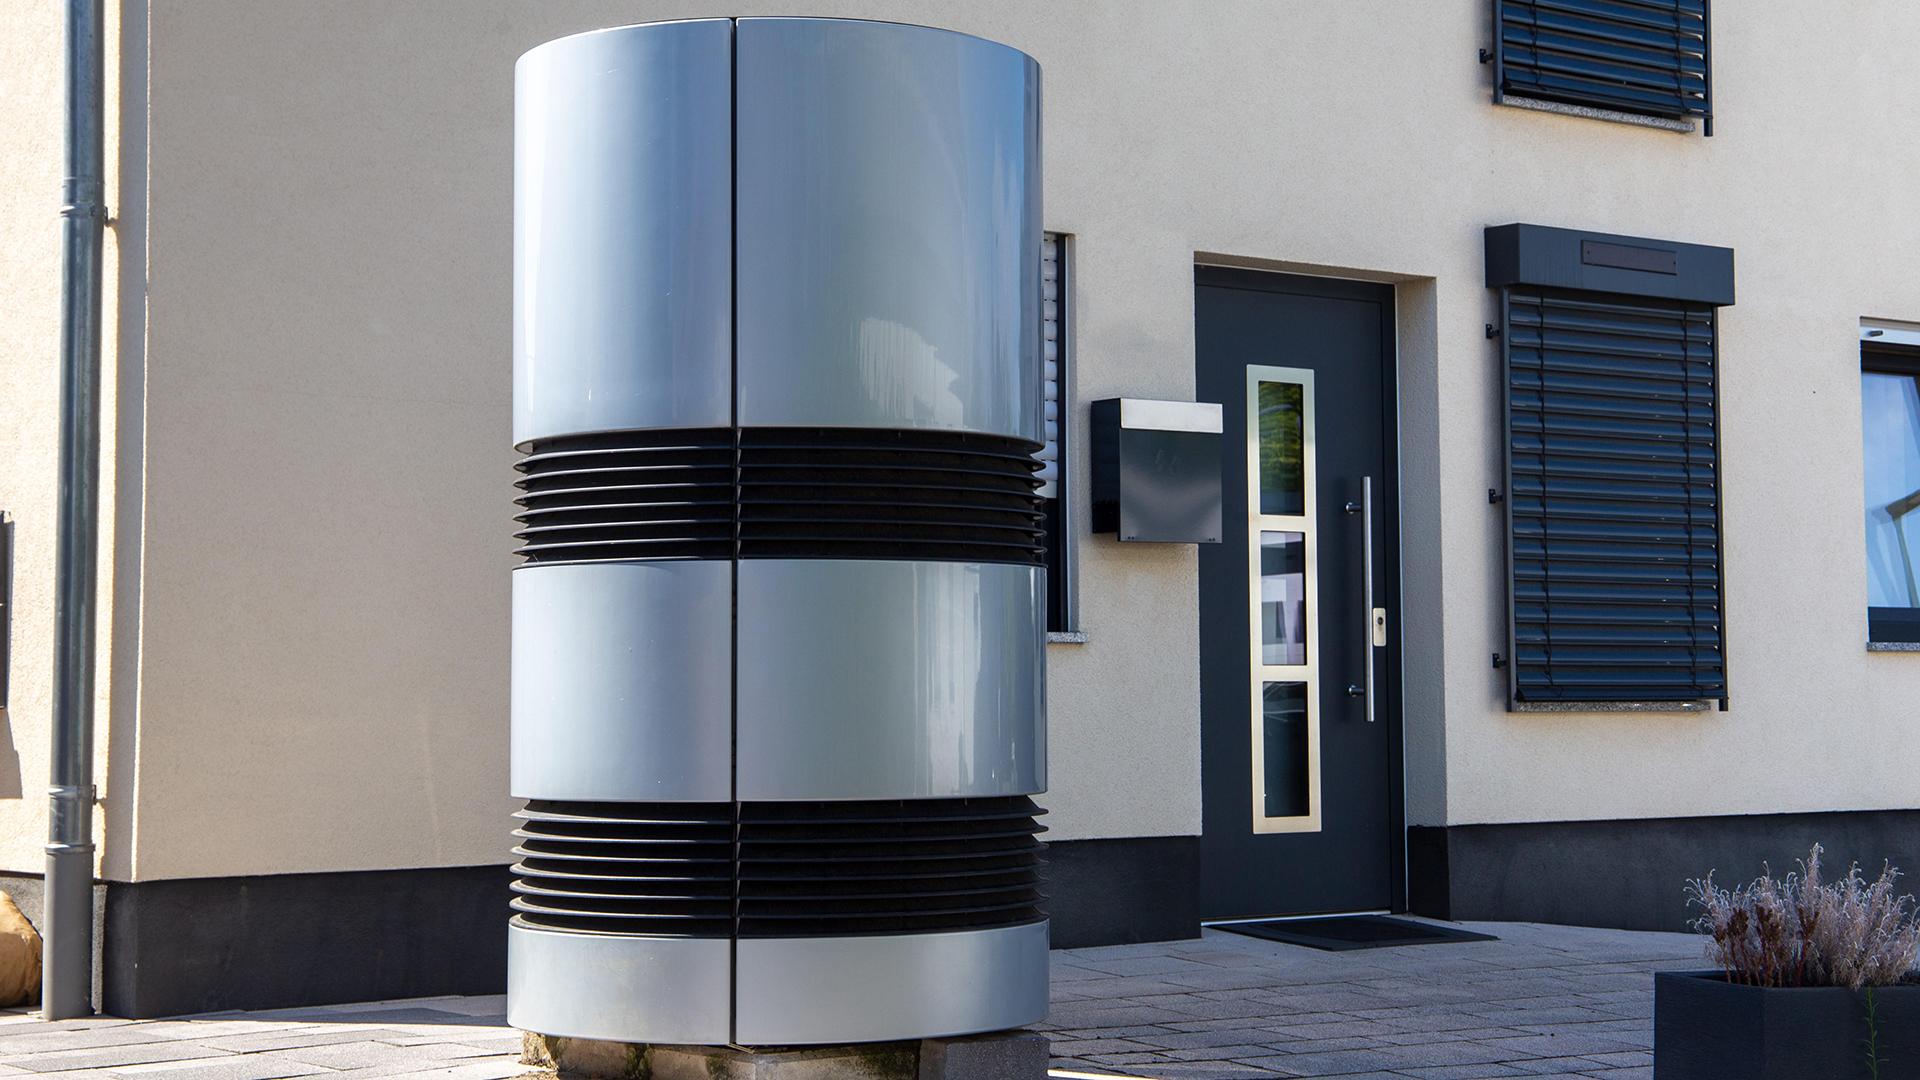 Luft- und Wasserwärmepumpe an einem neuen Wohnhaus. | picture alliance / CHROMORANGE